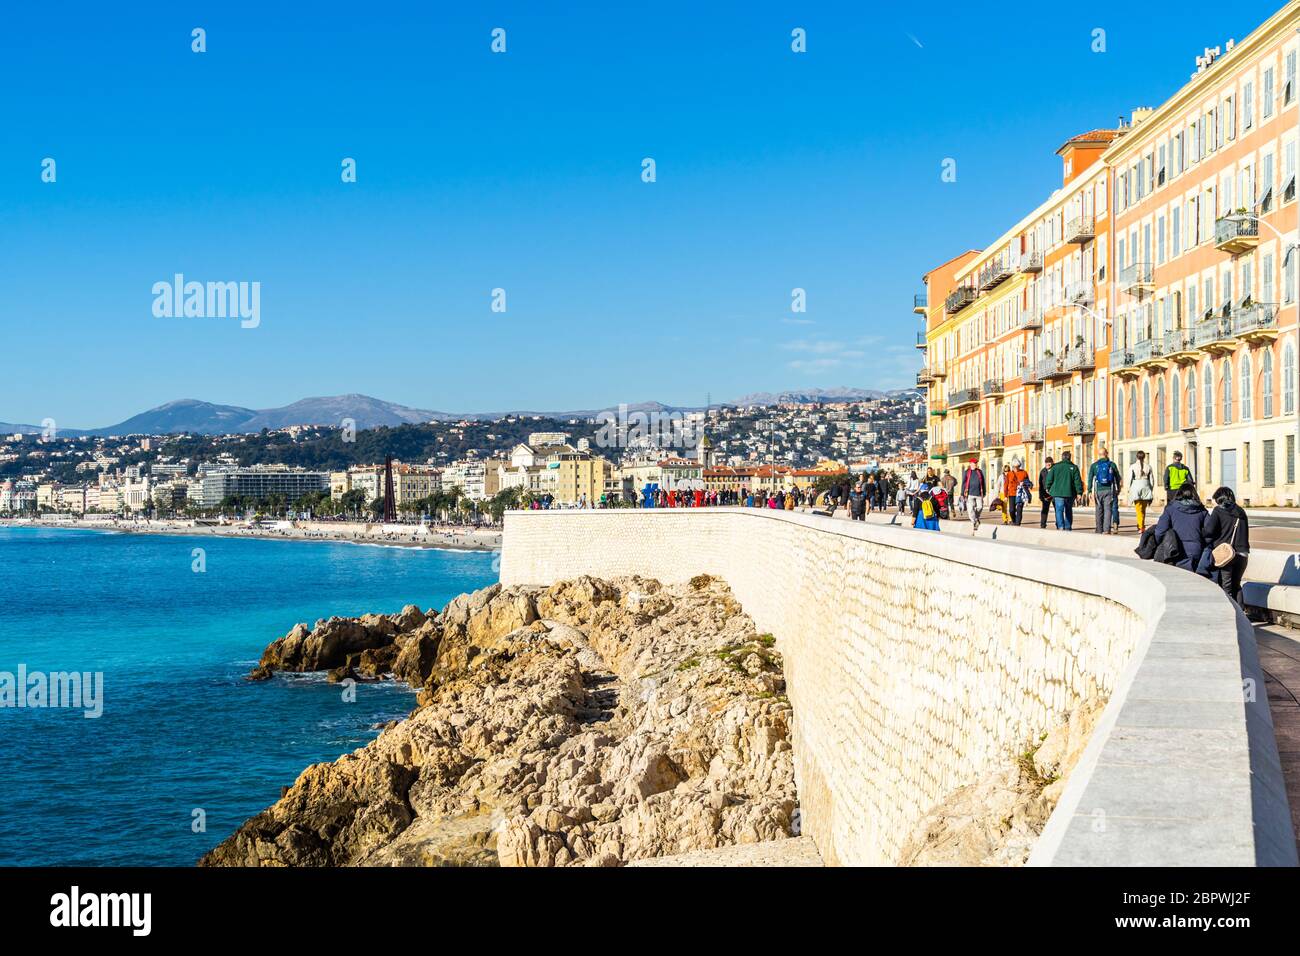 Vue sur le Quai Rauba Capeu à Nice, qui offre une vue magnifique sur la baie des Anges. Nice, France, janvier 2020 Banque D'Images